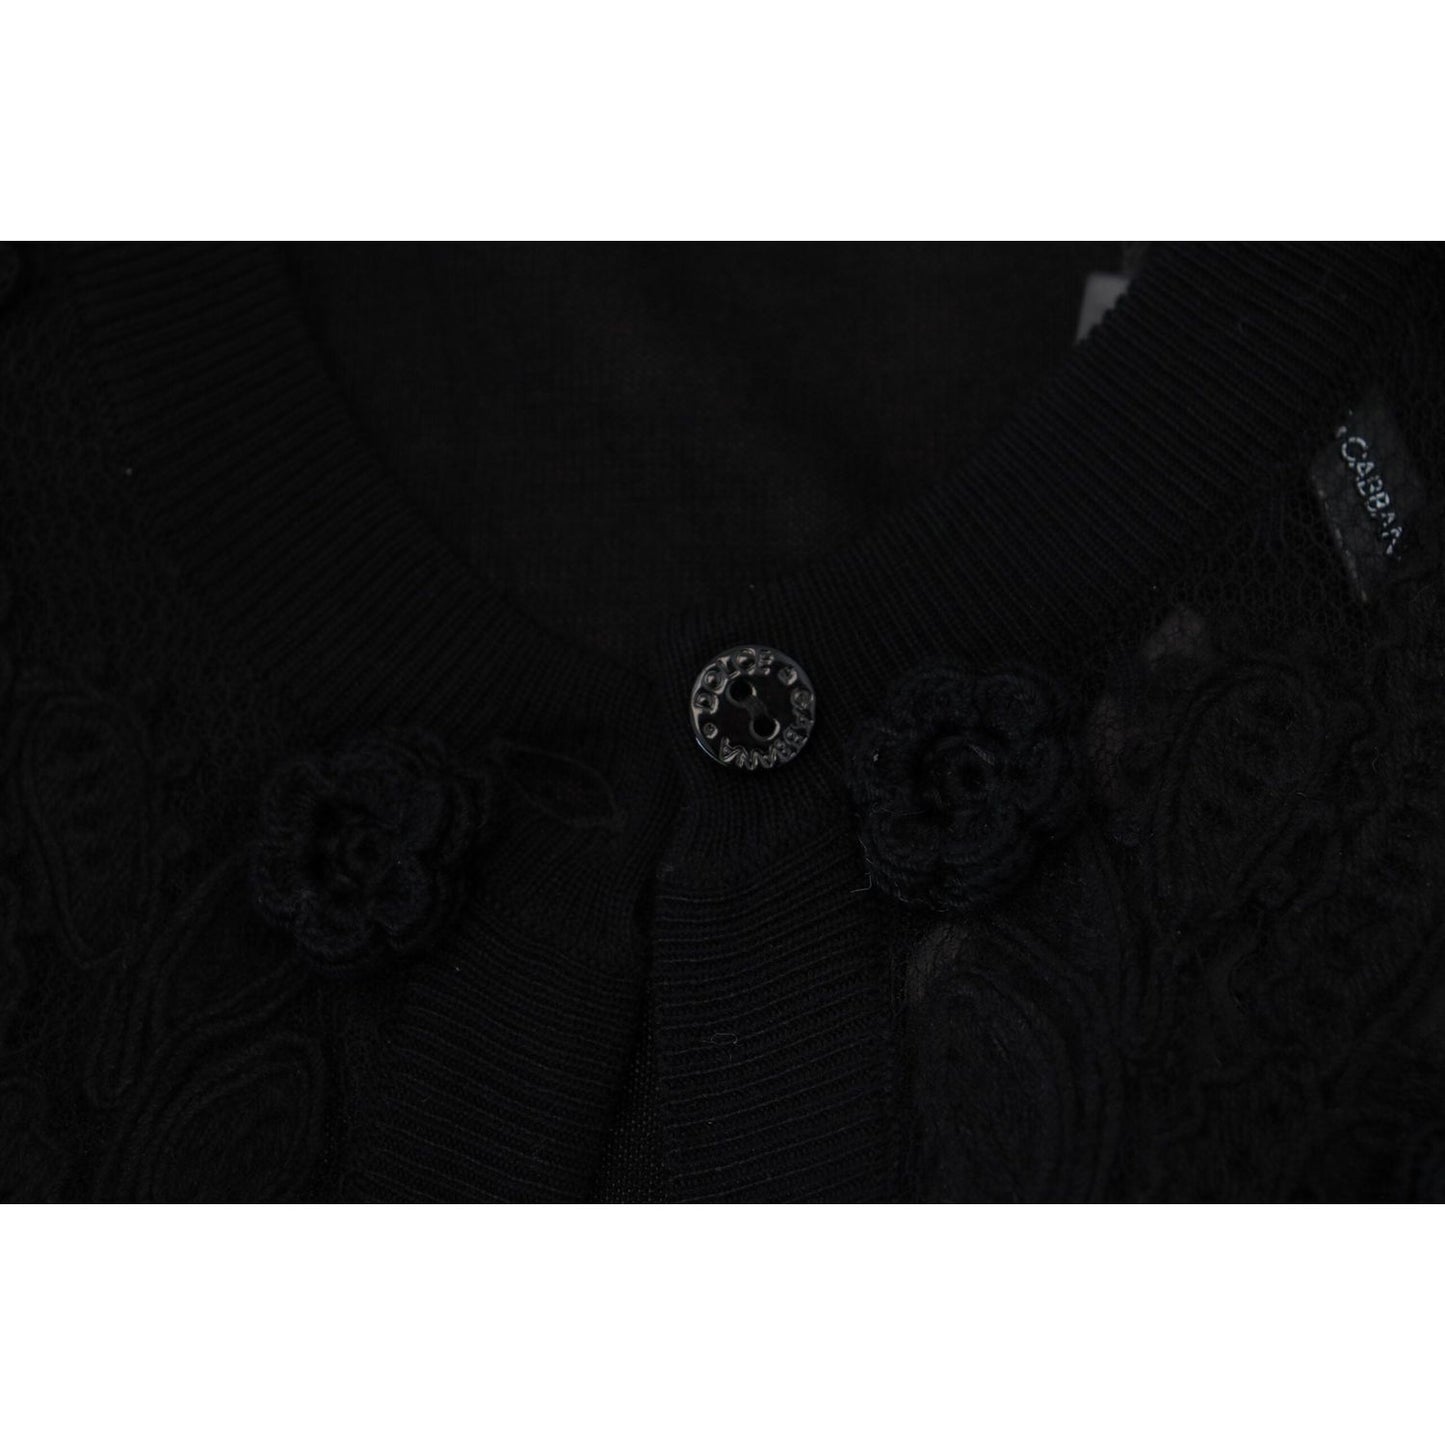 Dolce & Gabbana Elegant Black Floral Lace Cardigan Sweater black-floral-lace-button-cardigan-sweater